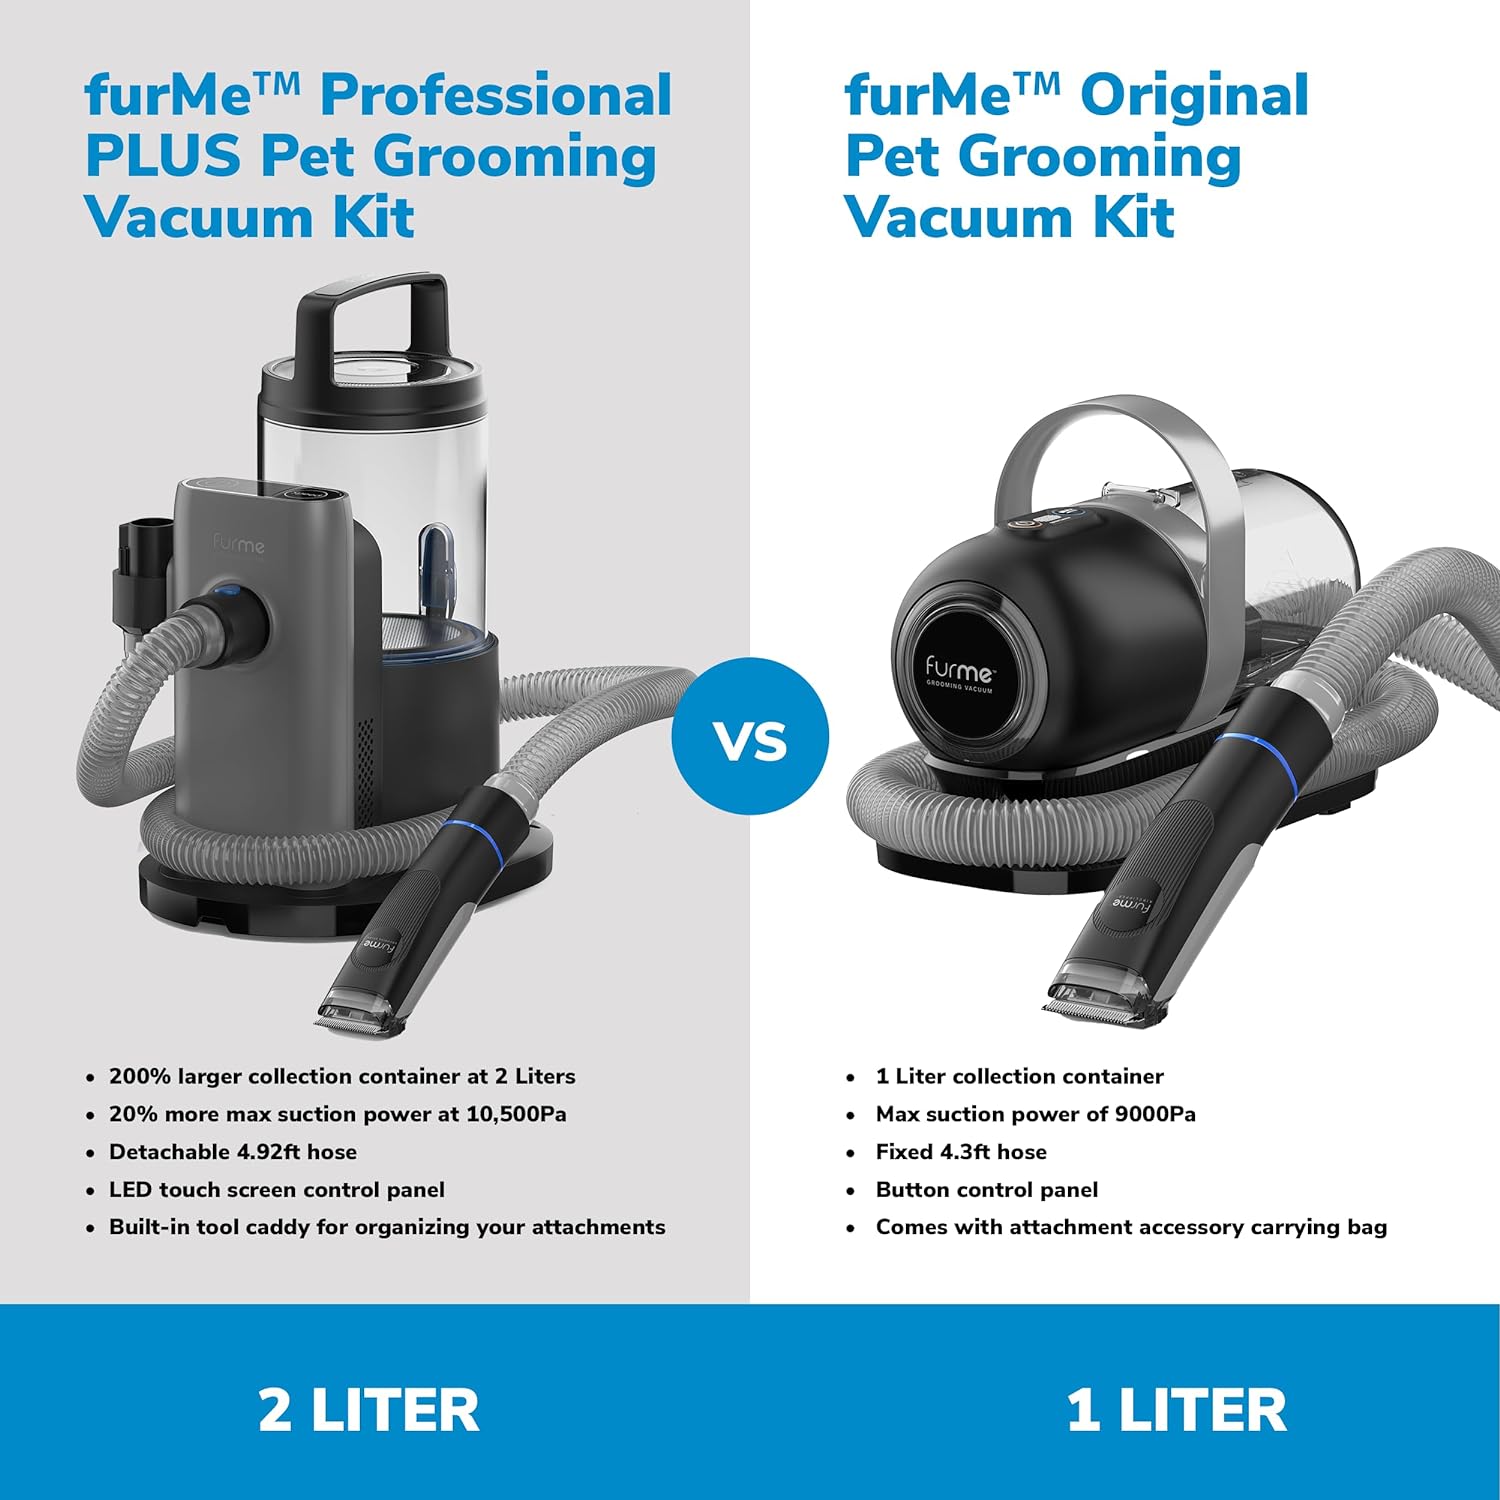 FurMe Professional Plus Pet Grooming Vacuum Kit